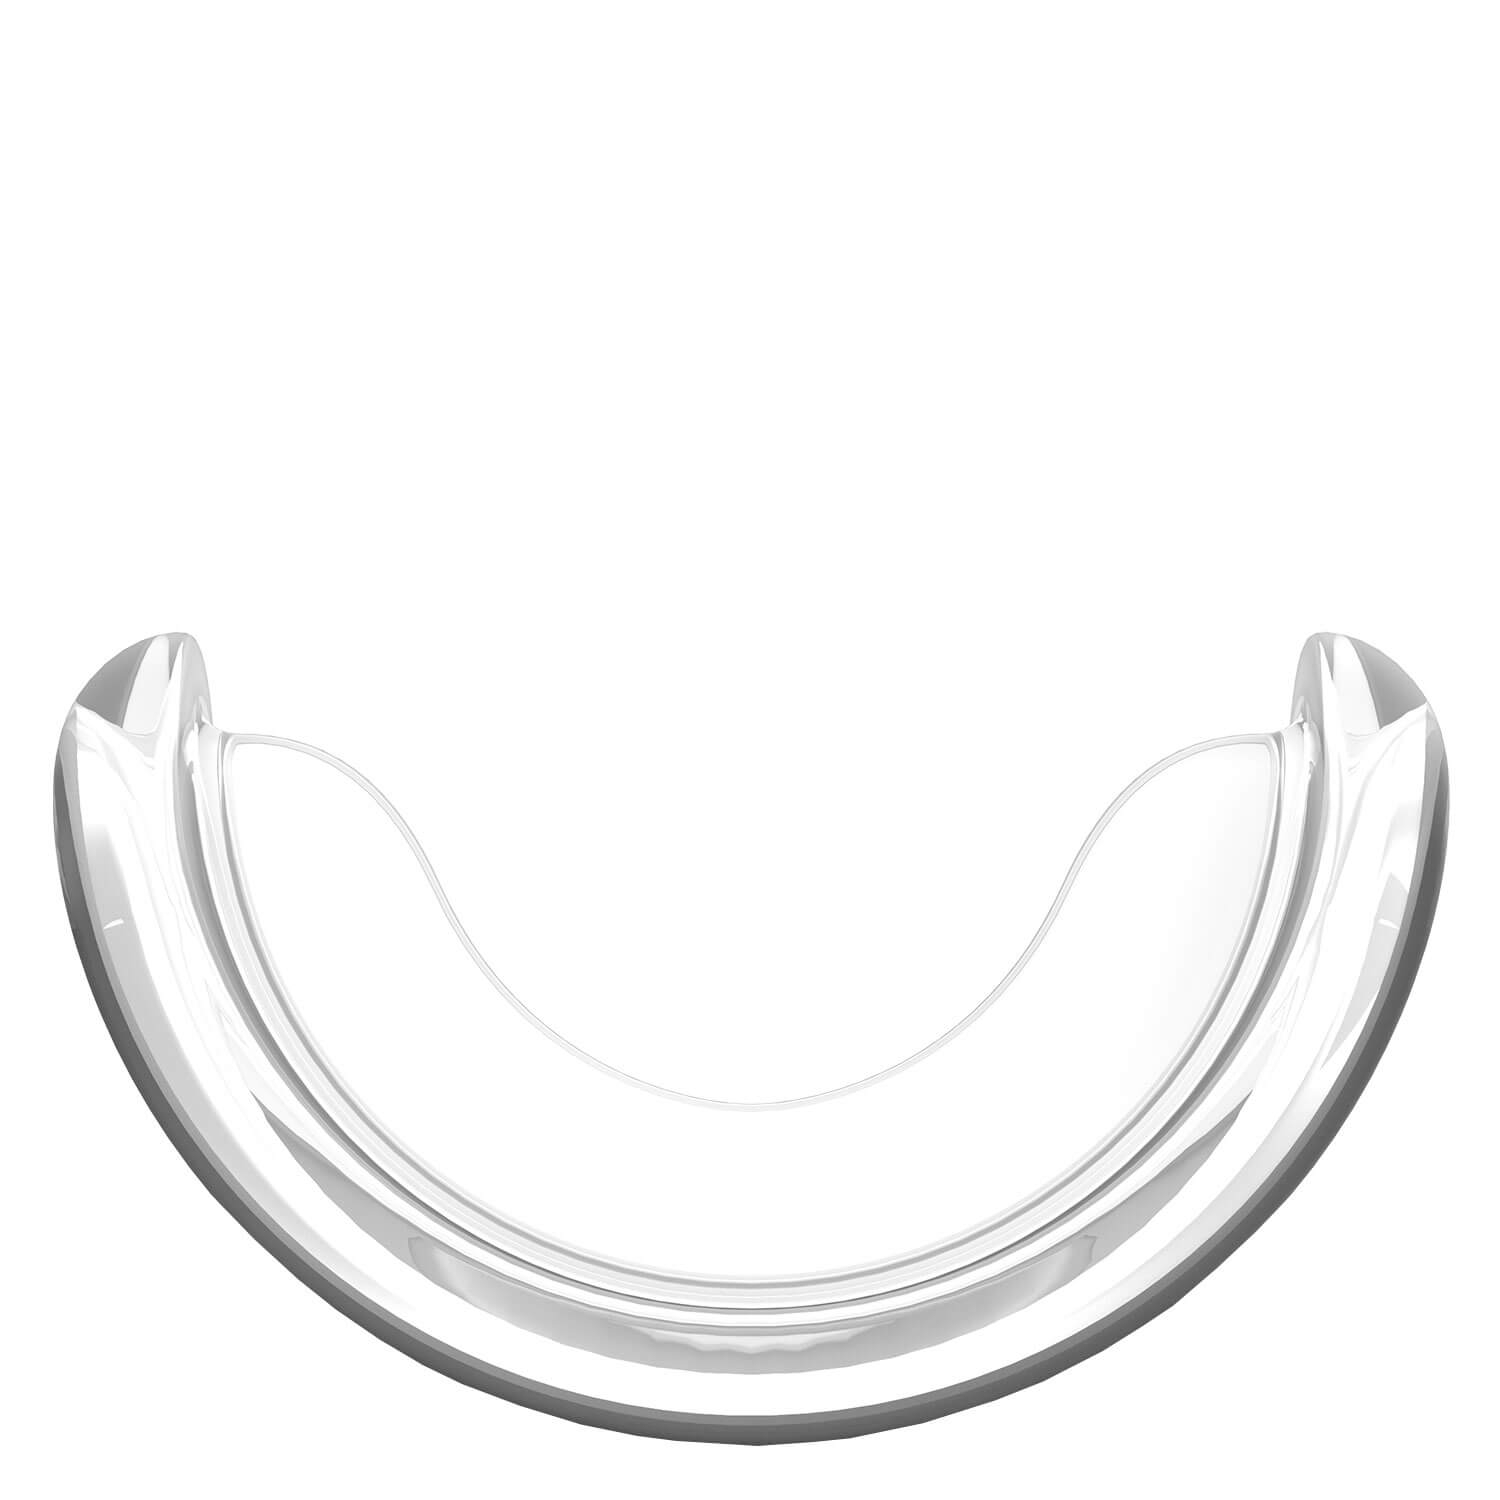 Produktbild von smilepen - Power Whitening Silicone Tray